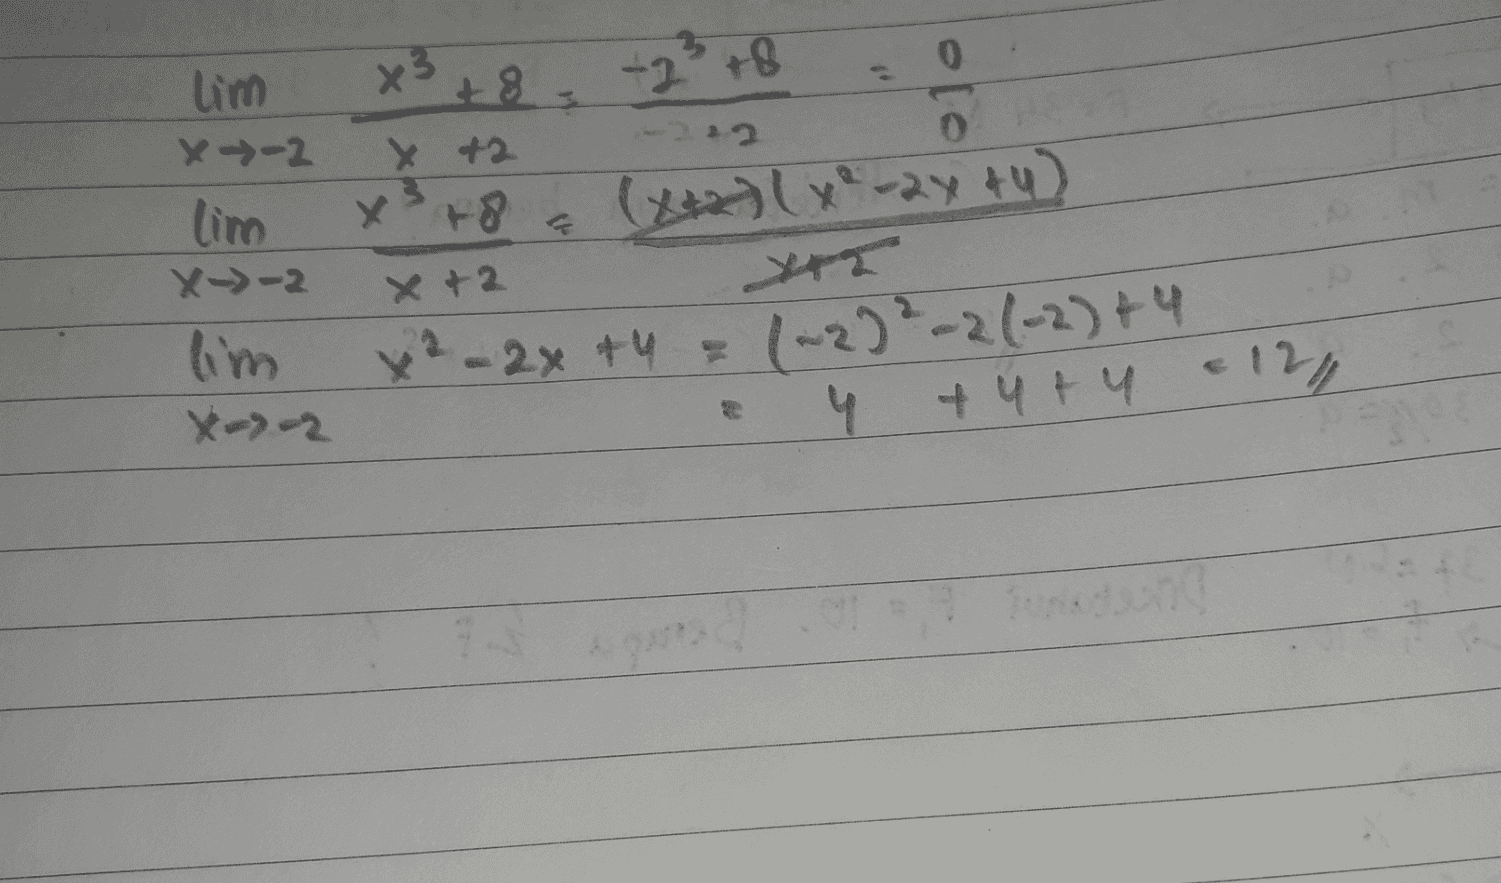 0 lim x→-2 x312-29. + 8 -212 0 x +2 x218 (ht KE-का) limo x>-2 lim X--2 x+2 T x² - 2x + 4 = 120-2(-1)५ +५५ IN - h 